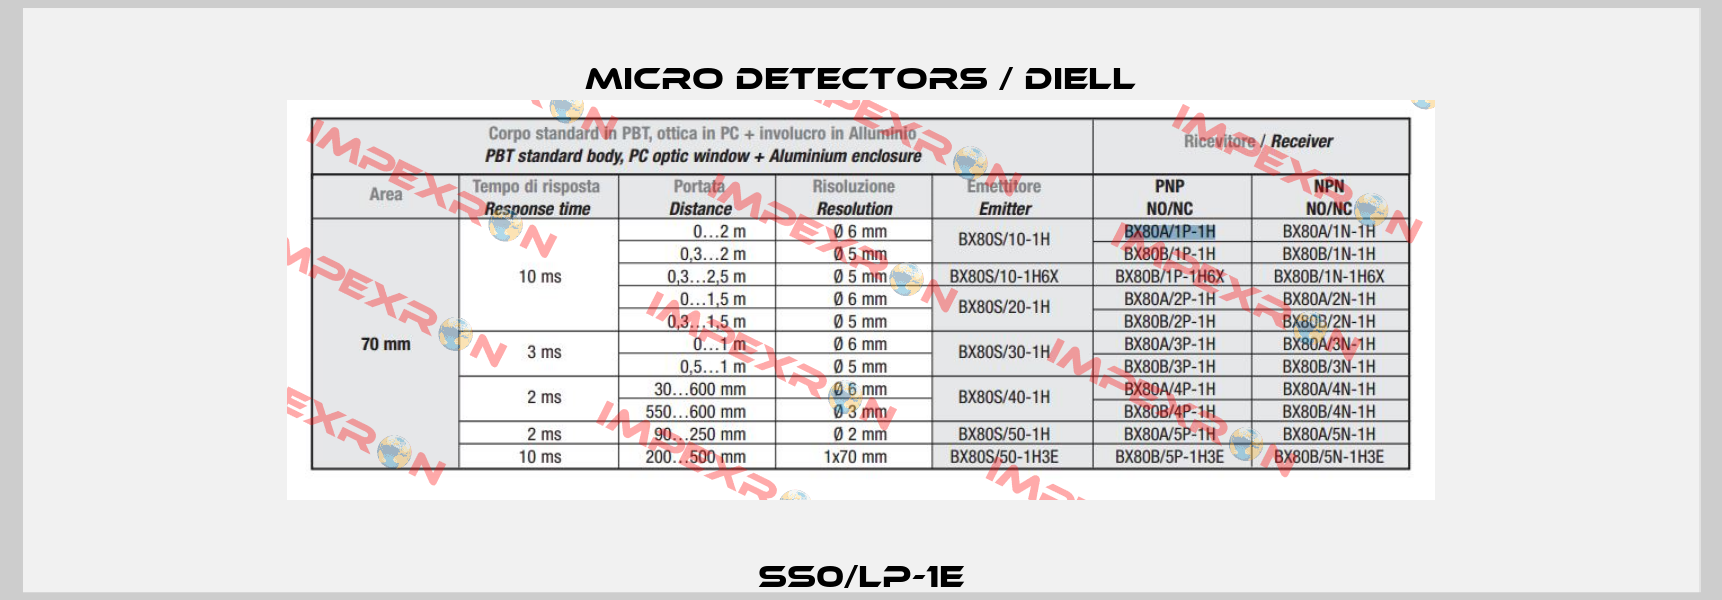 SS0/LP-1E Micro Detectors / Diell